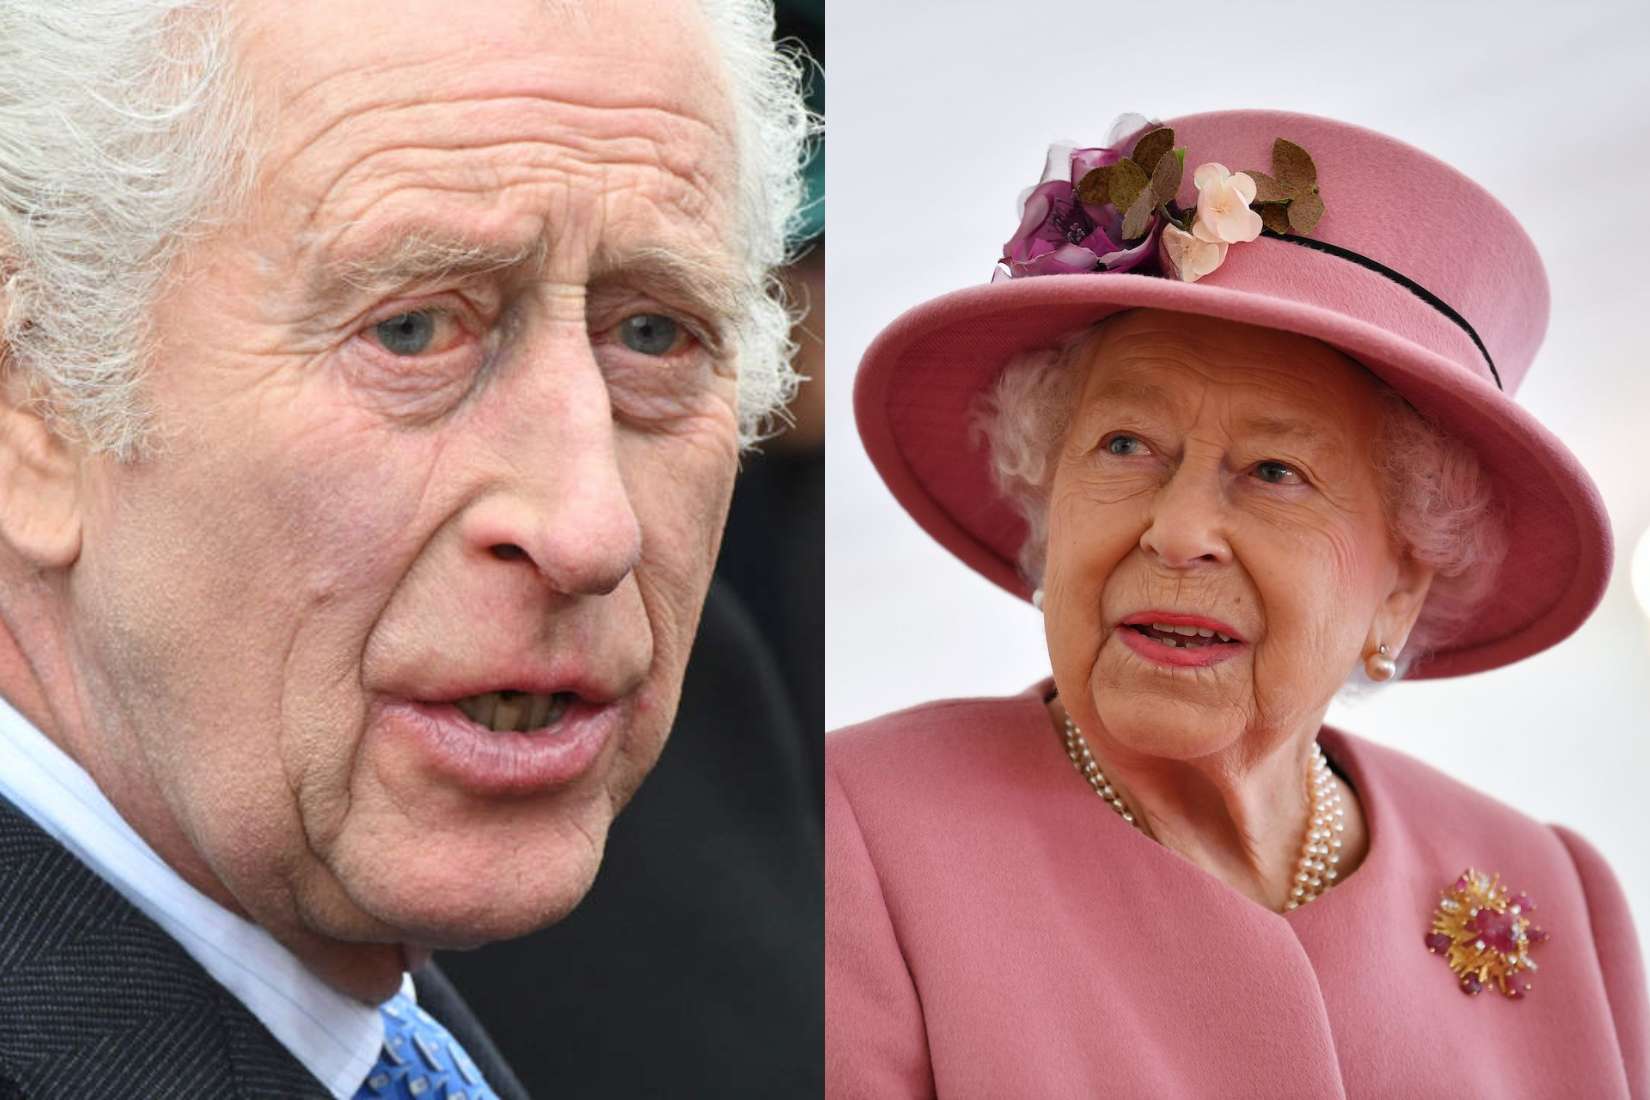 Rey Carlos III ahora es más rico que la reina Isabel II con una fortuna sorprendente